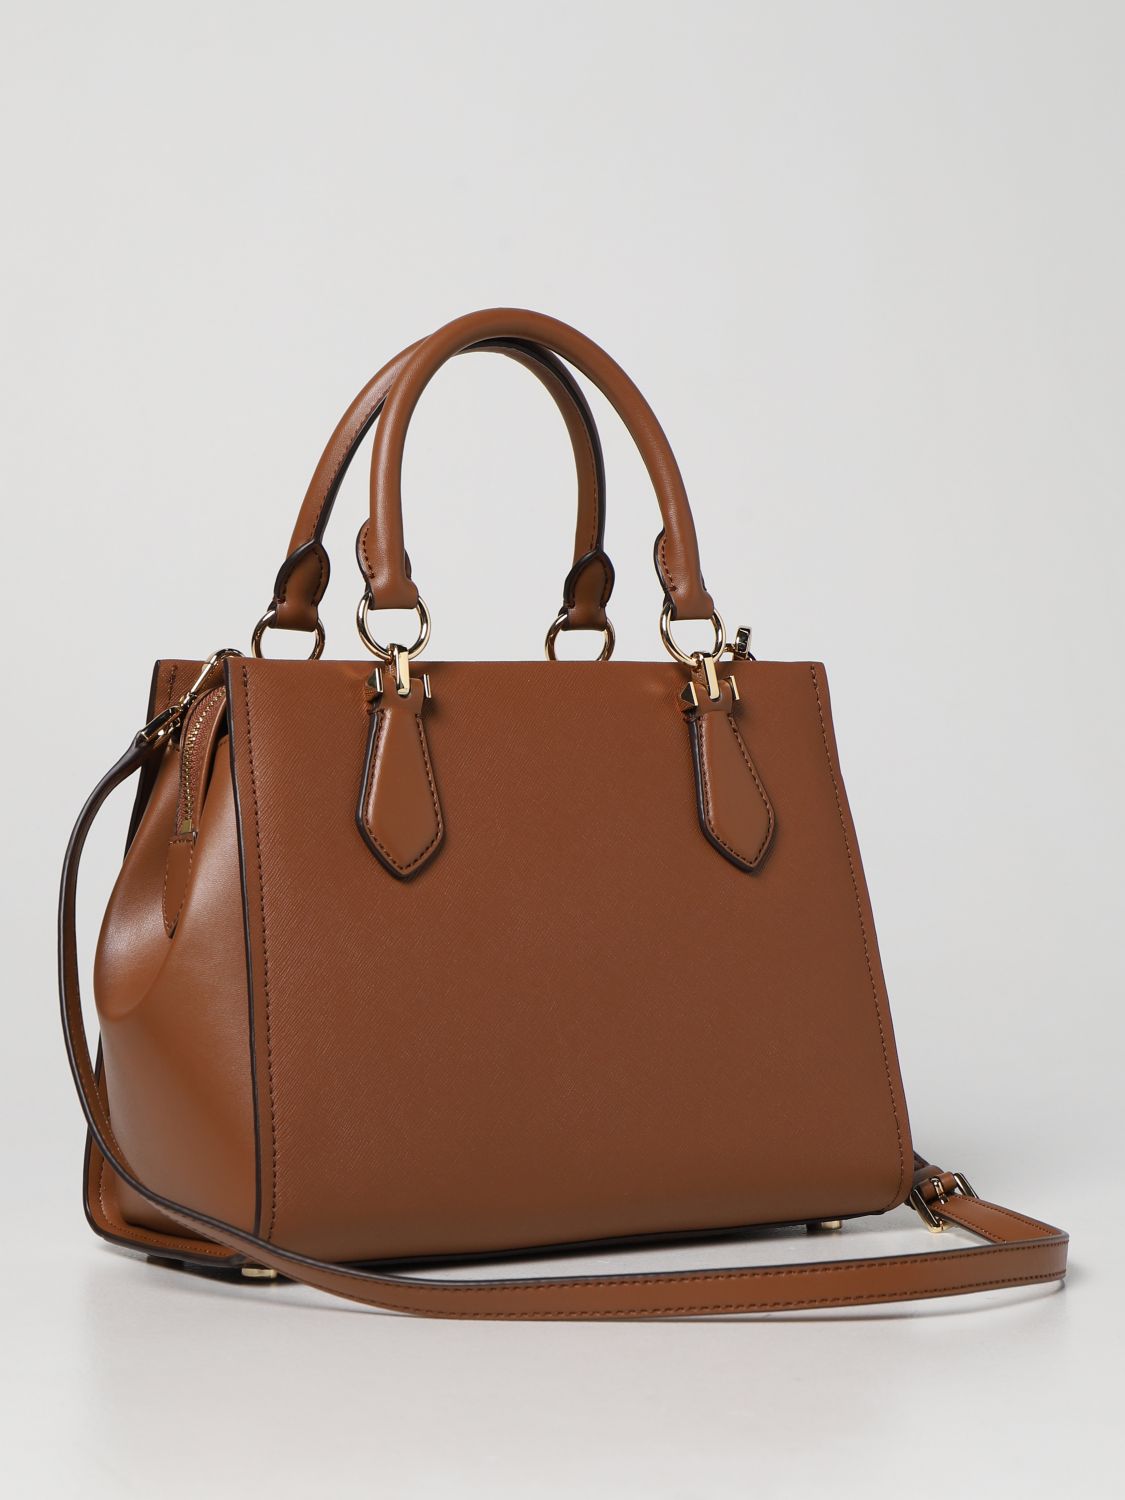 Michael Kors Bags & Handbags for Women for Sale 